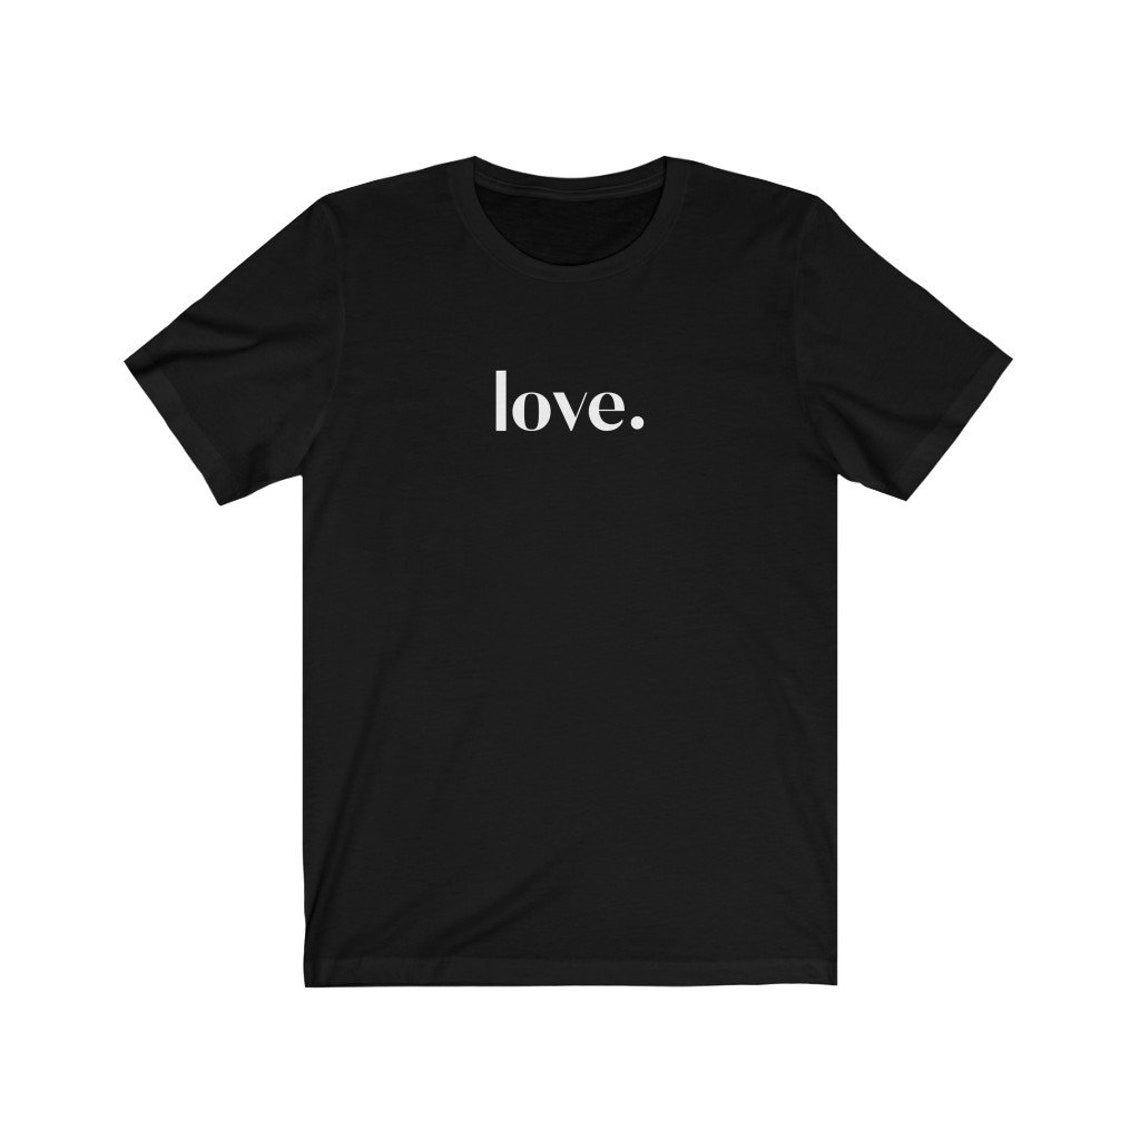 Love Tee One Word Shirt Graphic Tee Women's T-shirt | Etsy